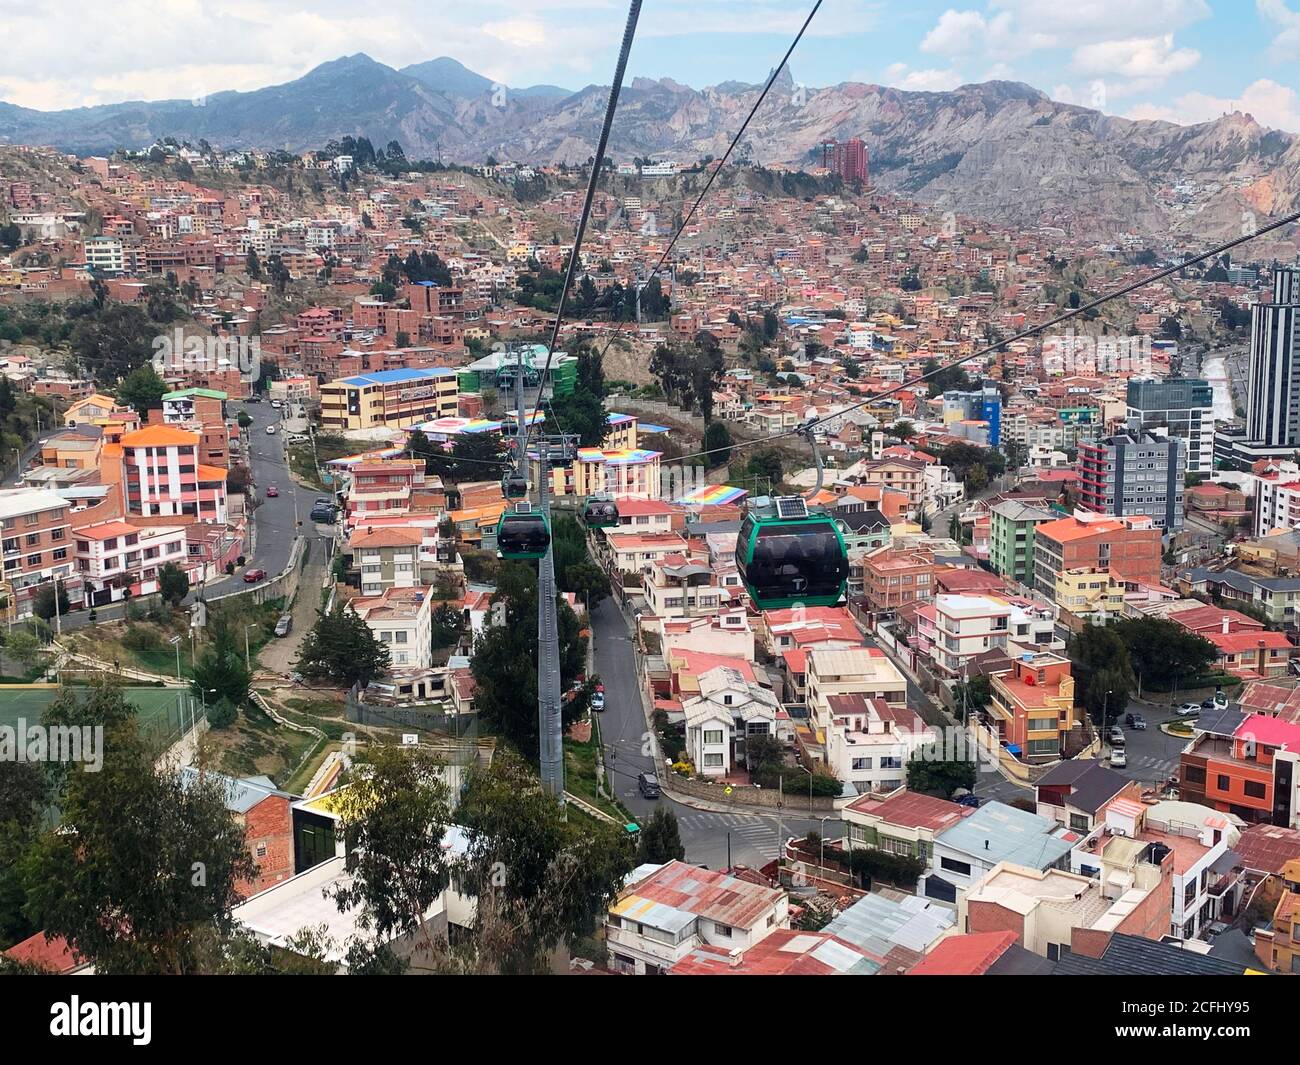 La paz ciudad bolivia fotografías e imágenes de alta resolución - Alamy